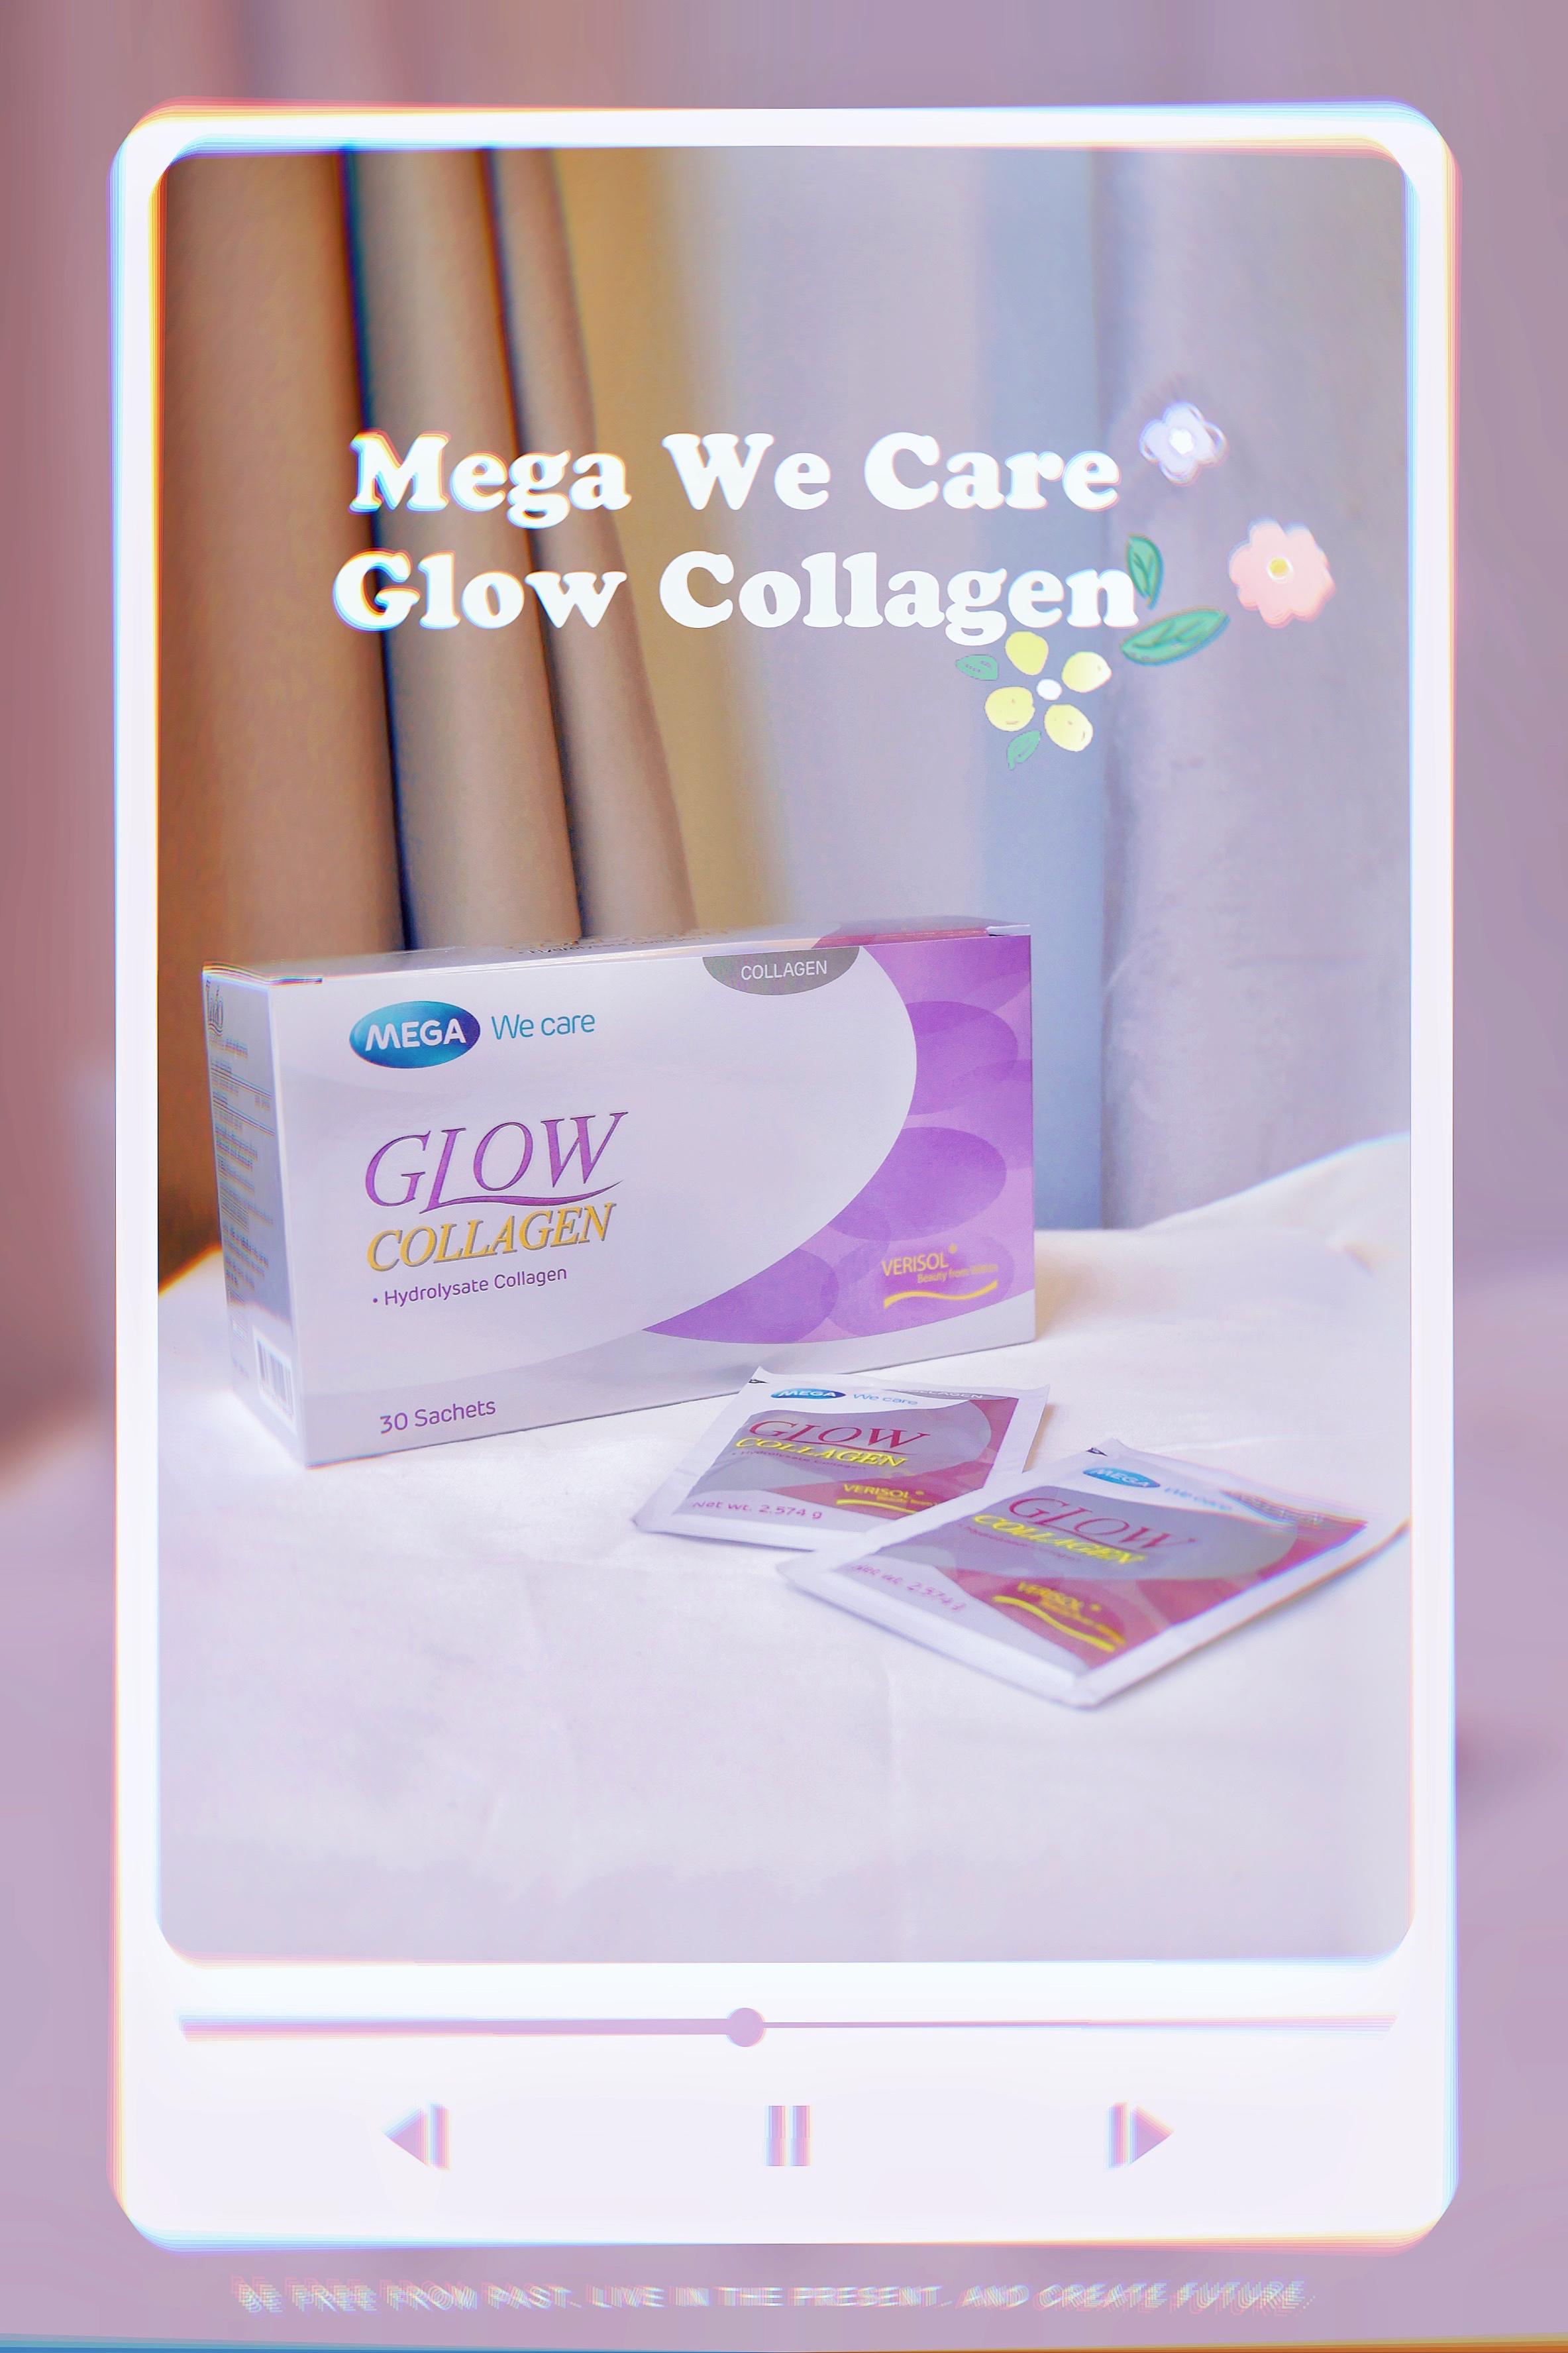 ภาพหน้าปก ผิวสวยใส เปล่งประกายเหมือนผิวเด็ก ด้วย Mega We Care Glow Collagen ที่:0